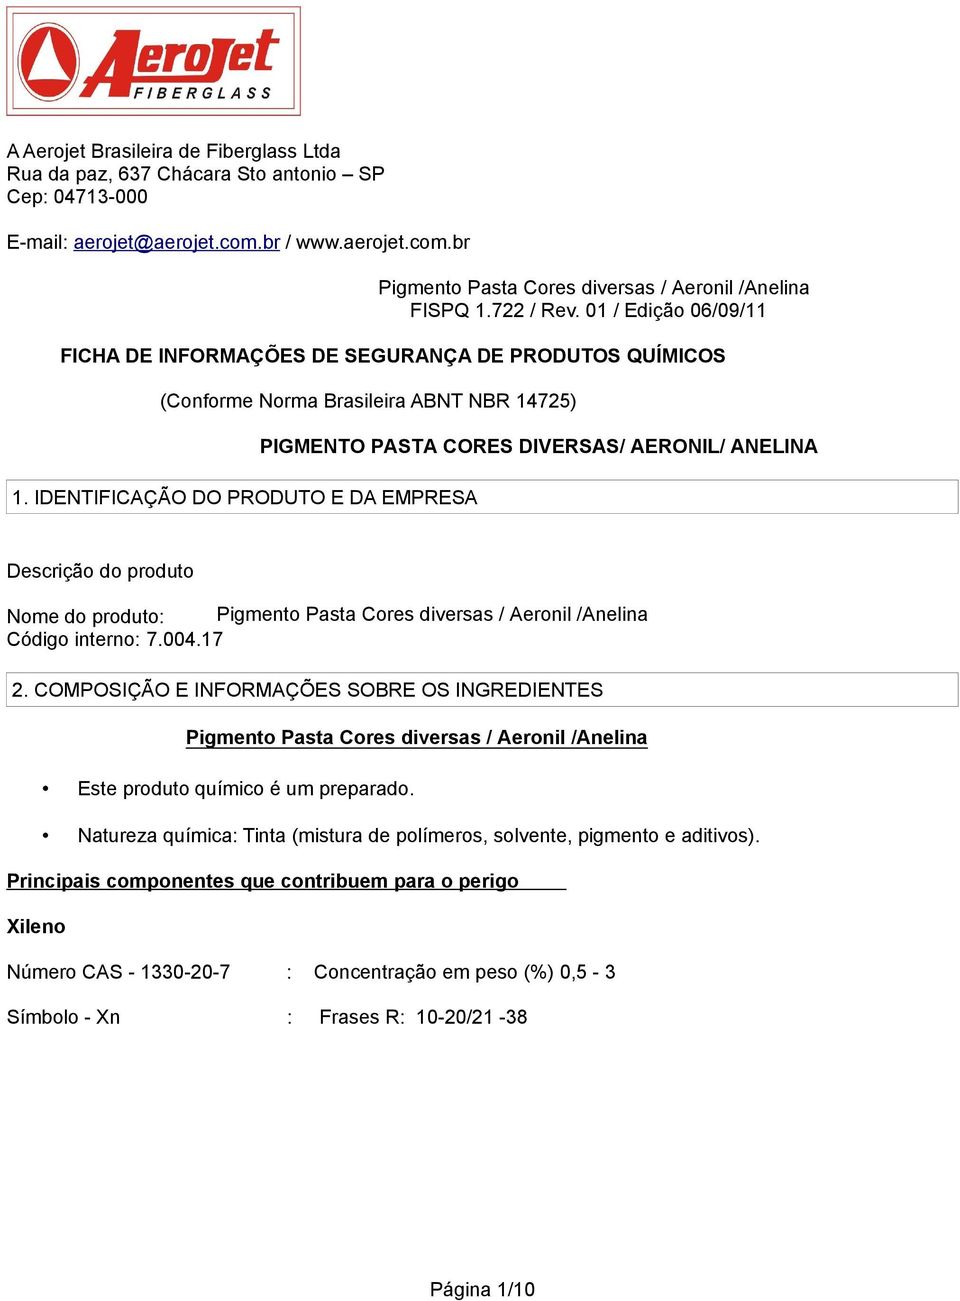 IDENTIFICAÇÃO DO PRODUTO E DA EMPRESA PIGMENTO PASTA CORES DIVERSAS/ AERONIL/ ANELINA Descrição do produto Nome do produto: Pigmento Pasta Cores diversas / Aeronil /Anelina Código interno: 7.004.17 2.